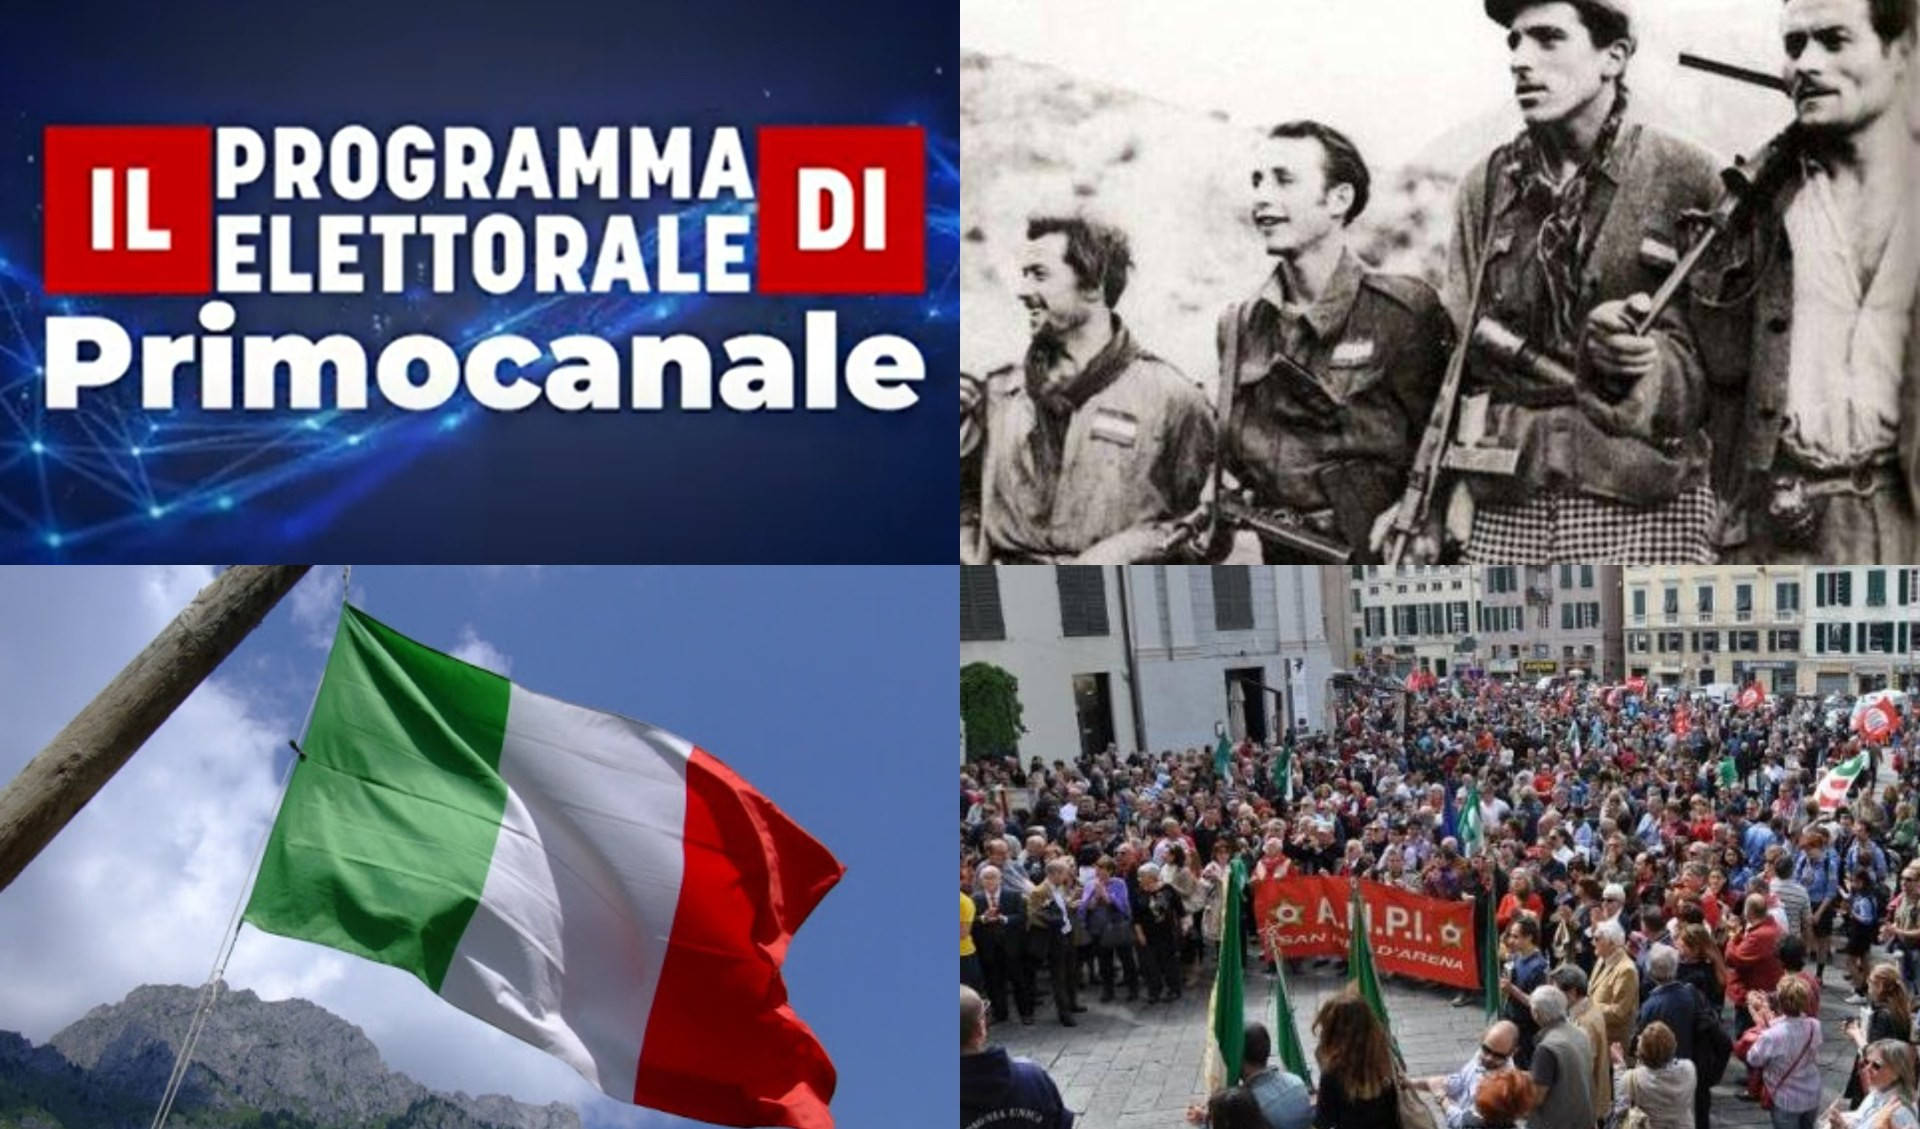 Il Programma elettorale di Primocanale - 25 aprile, tra storia e attualità (puntata 14)